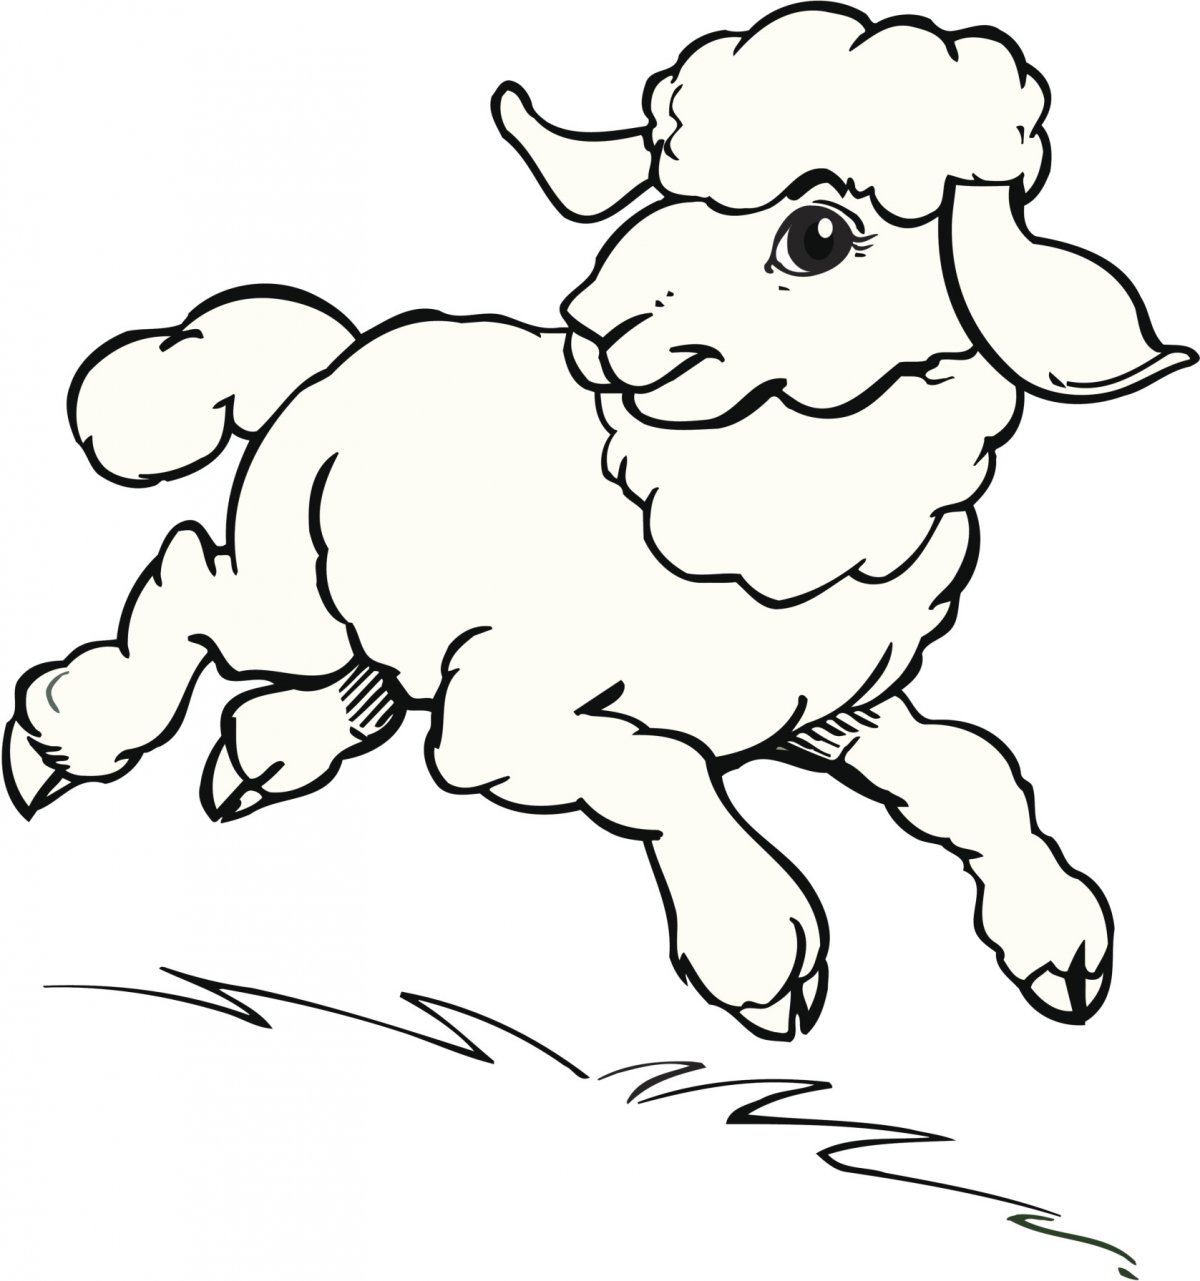 羊的简笔画大全 卡通图片